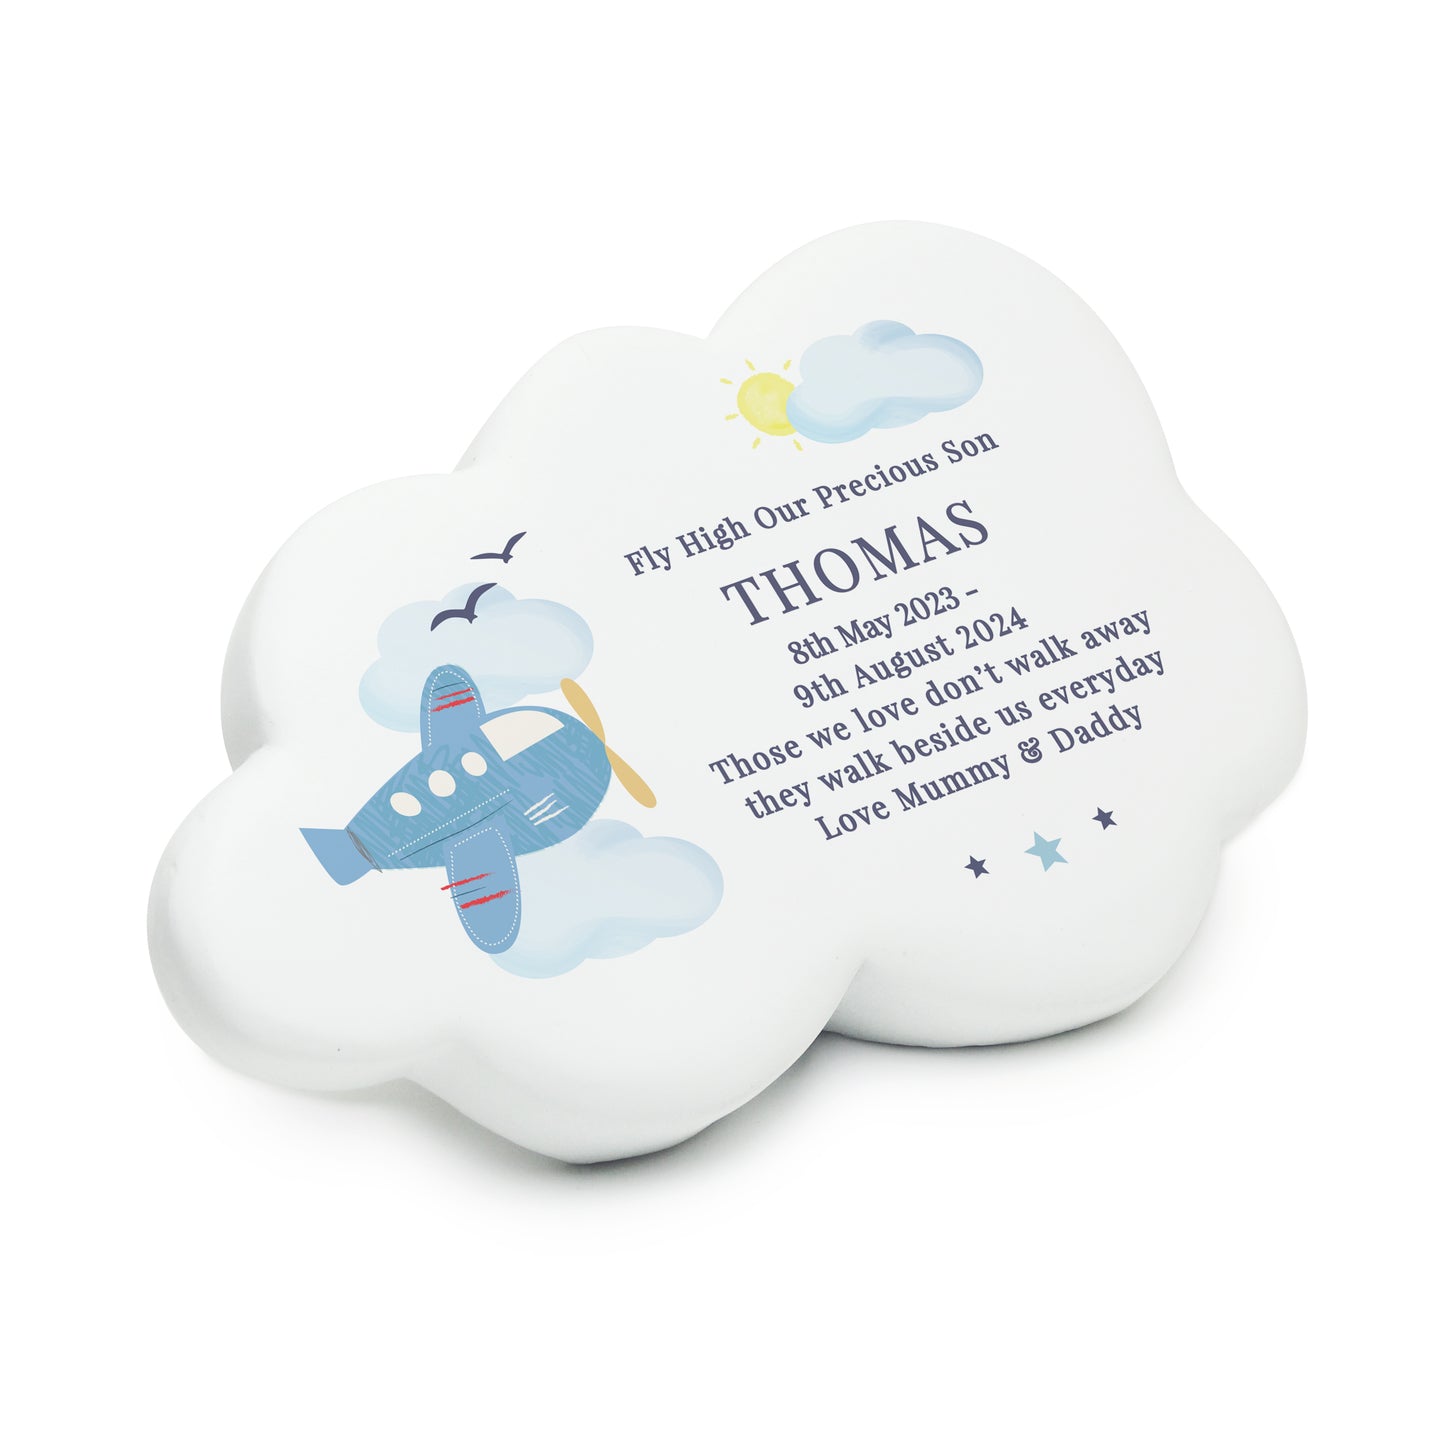 Personalised Plane Resin Memorial Cloud